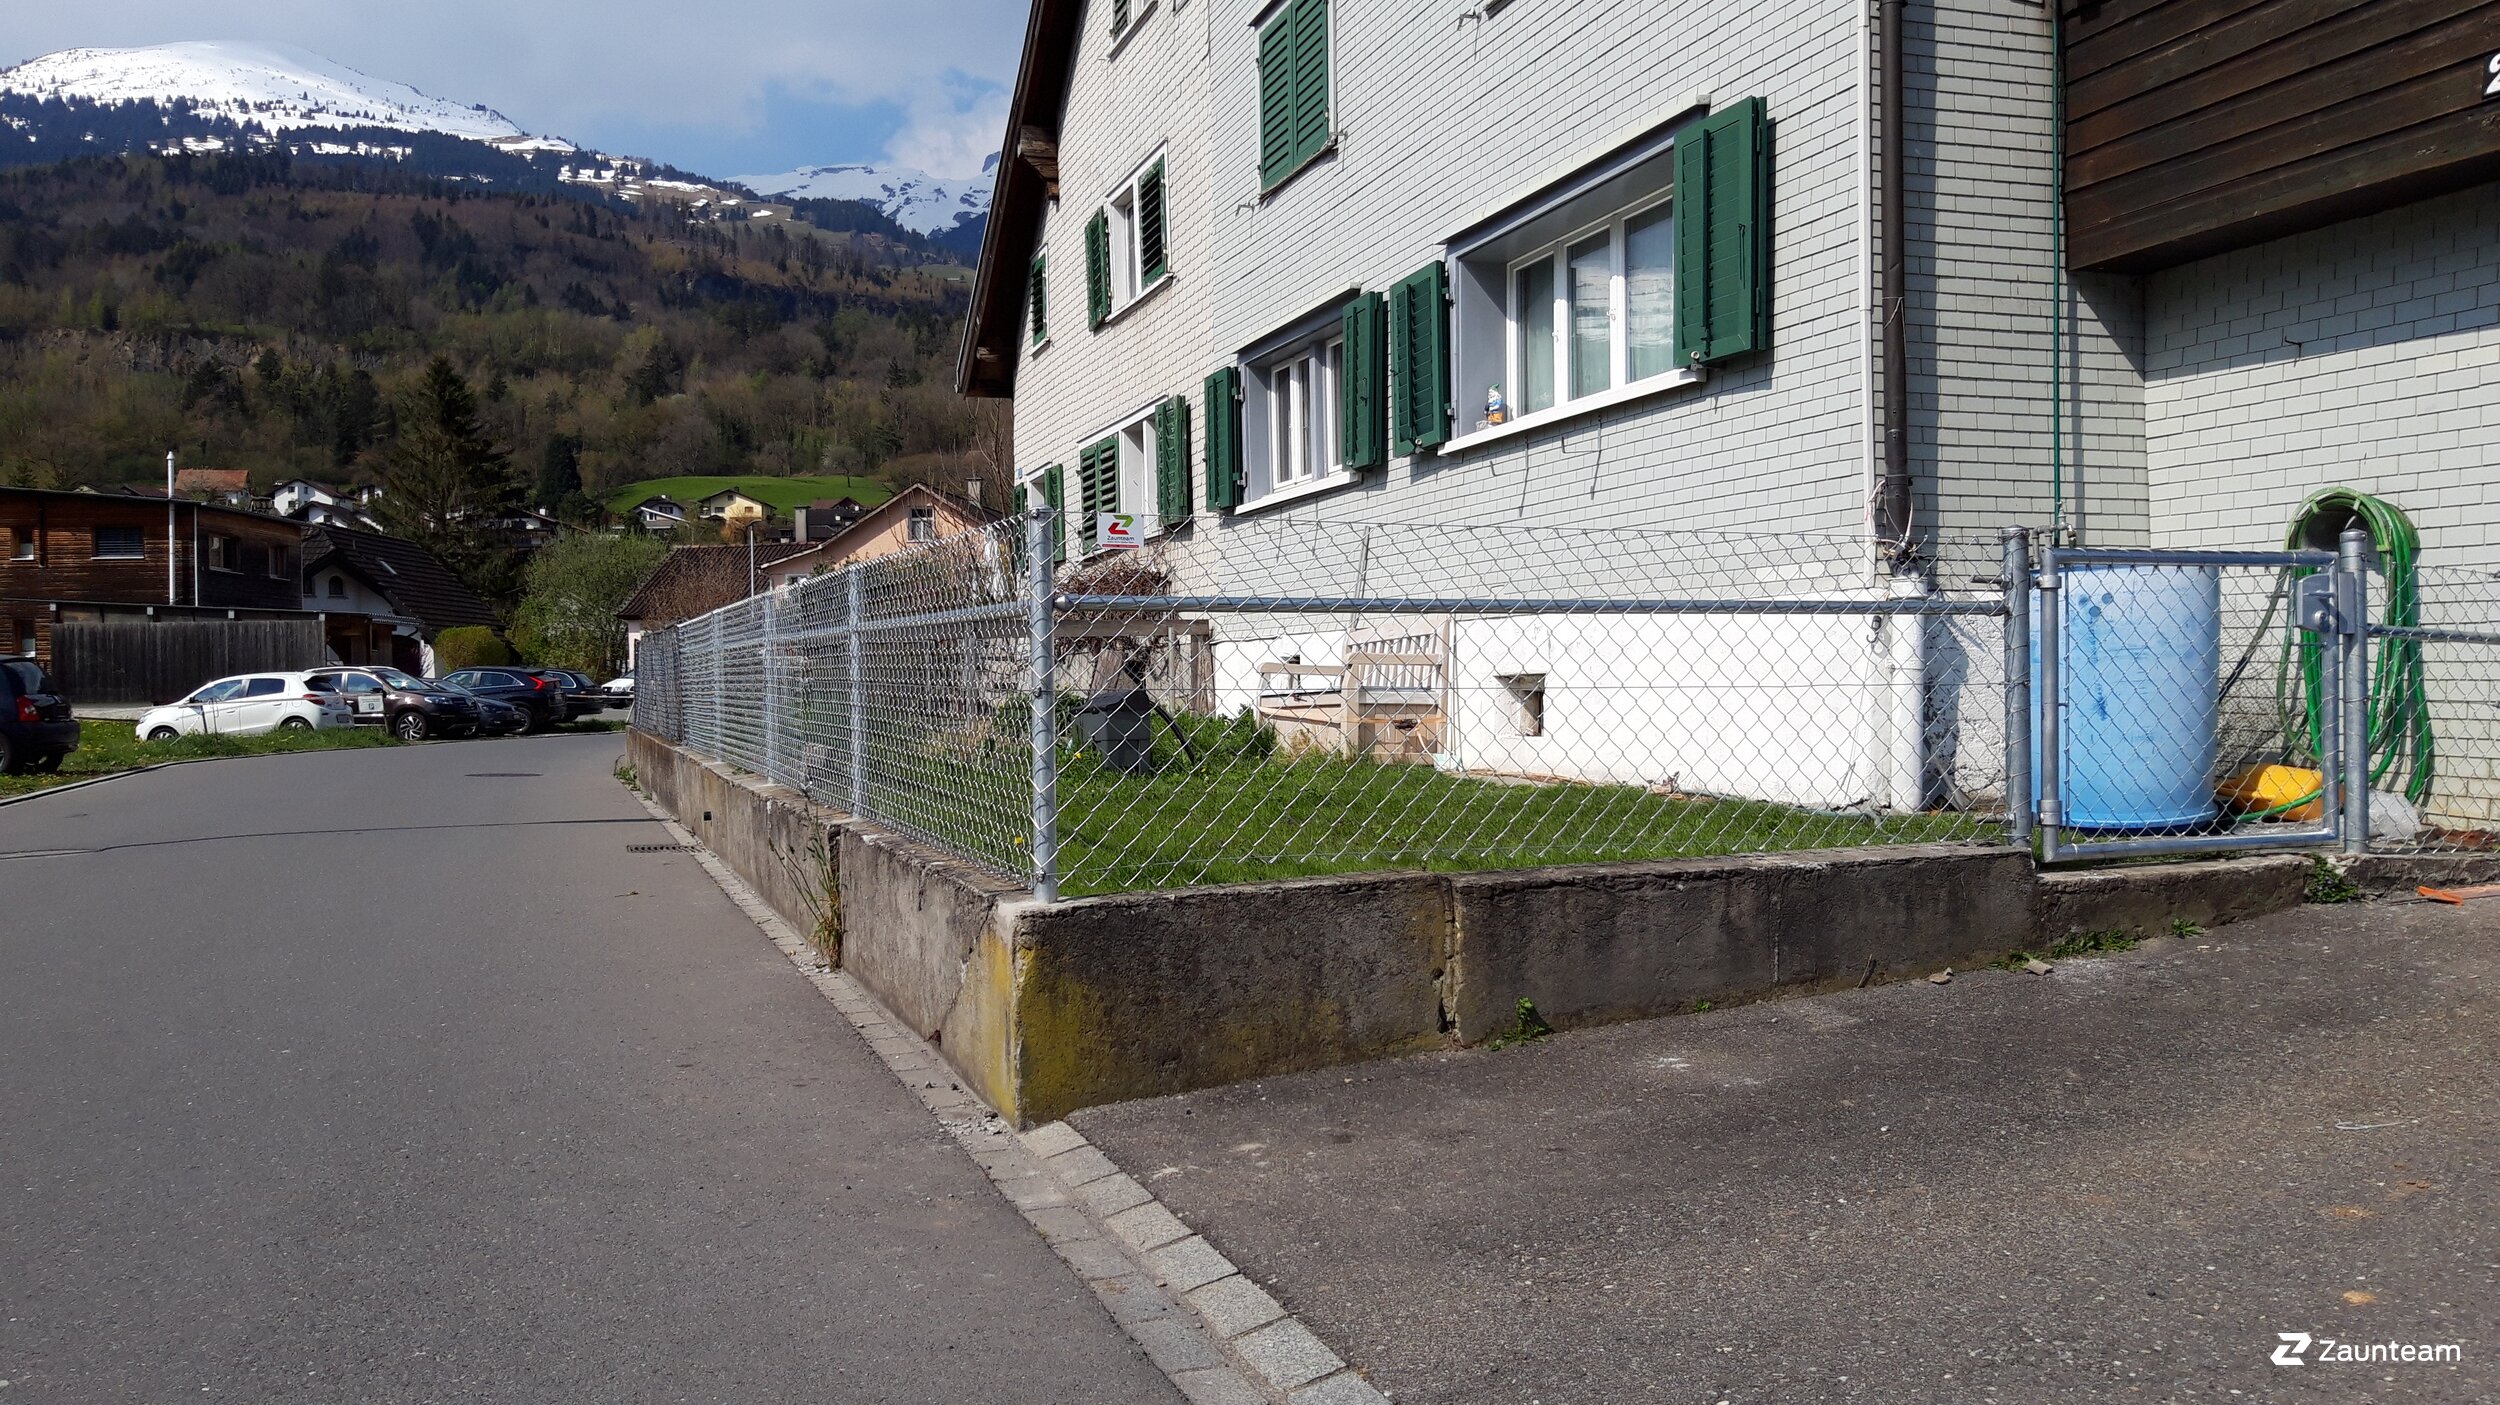 Grillage diagonal de 2021 à 9470 Räfis Suisse de Zaunteam Werdenberg.